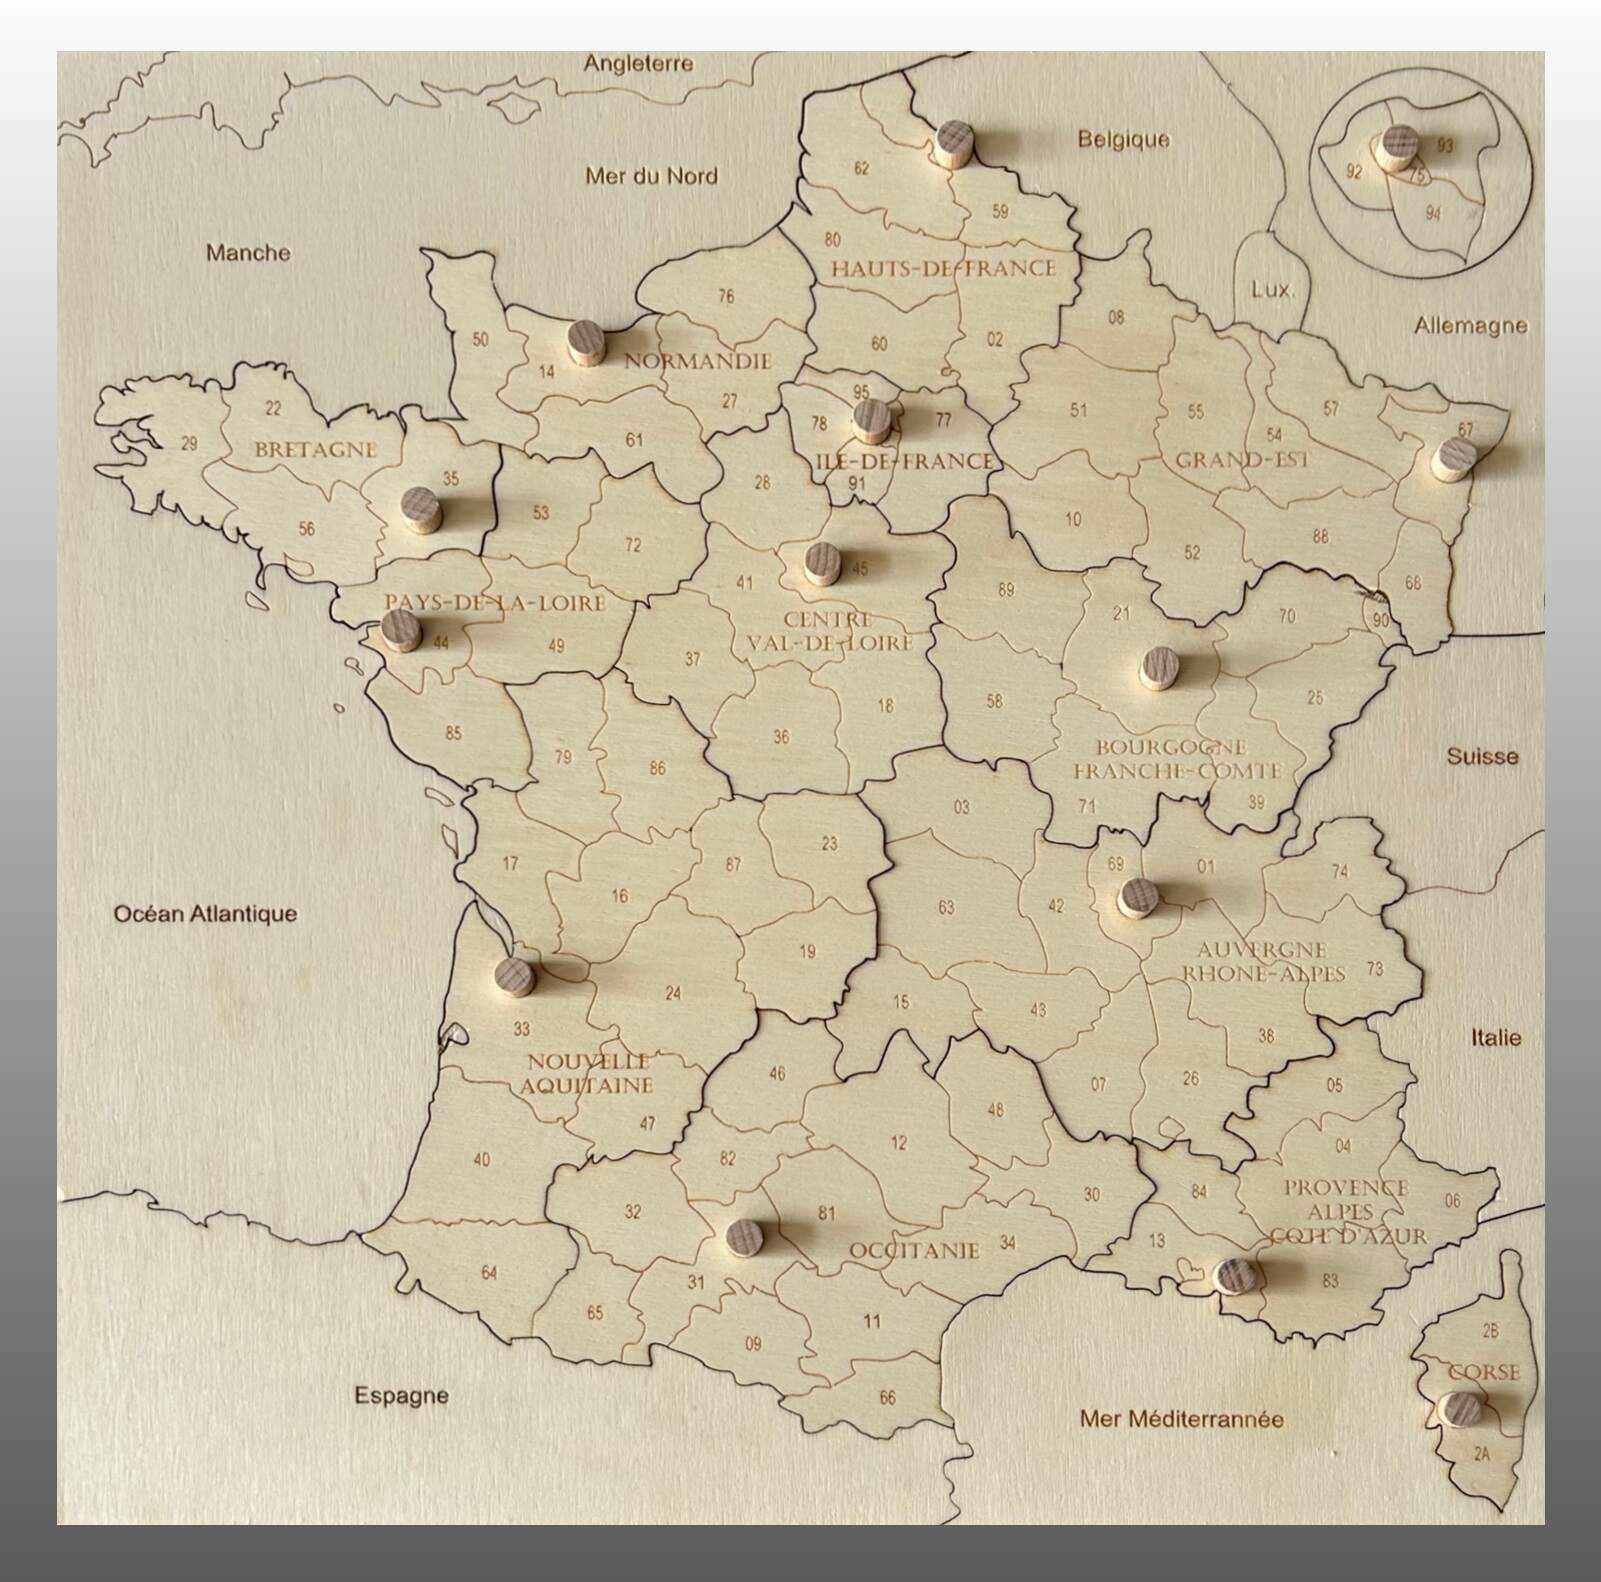 16560 - Puzzle carte de France des départements